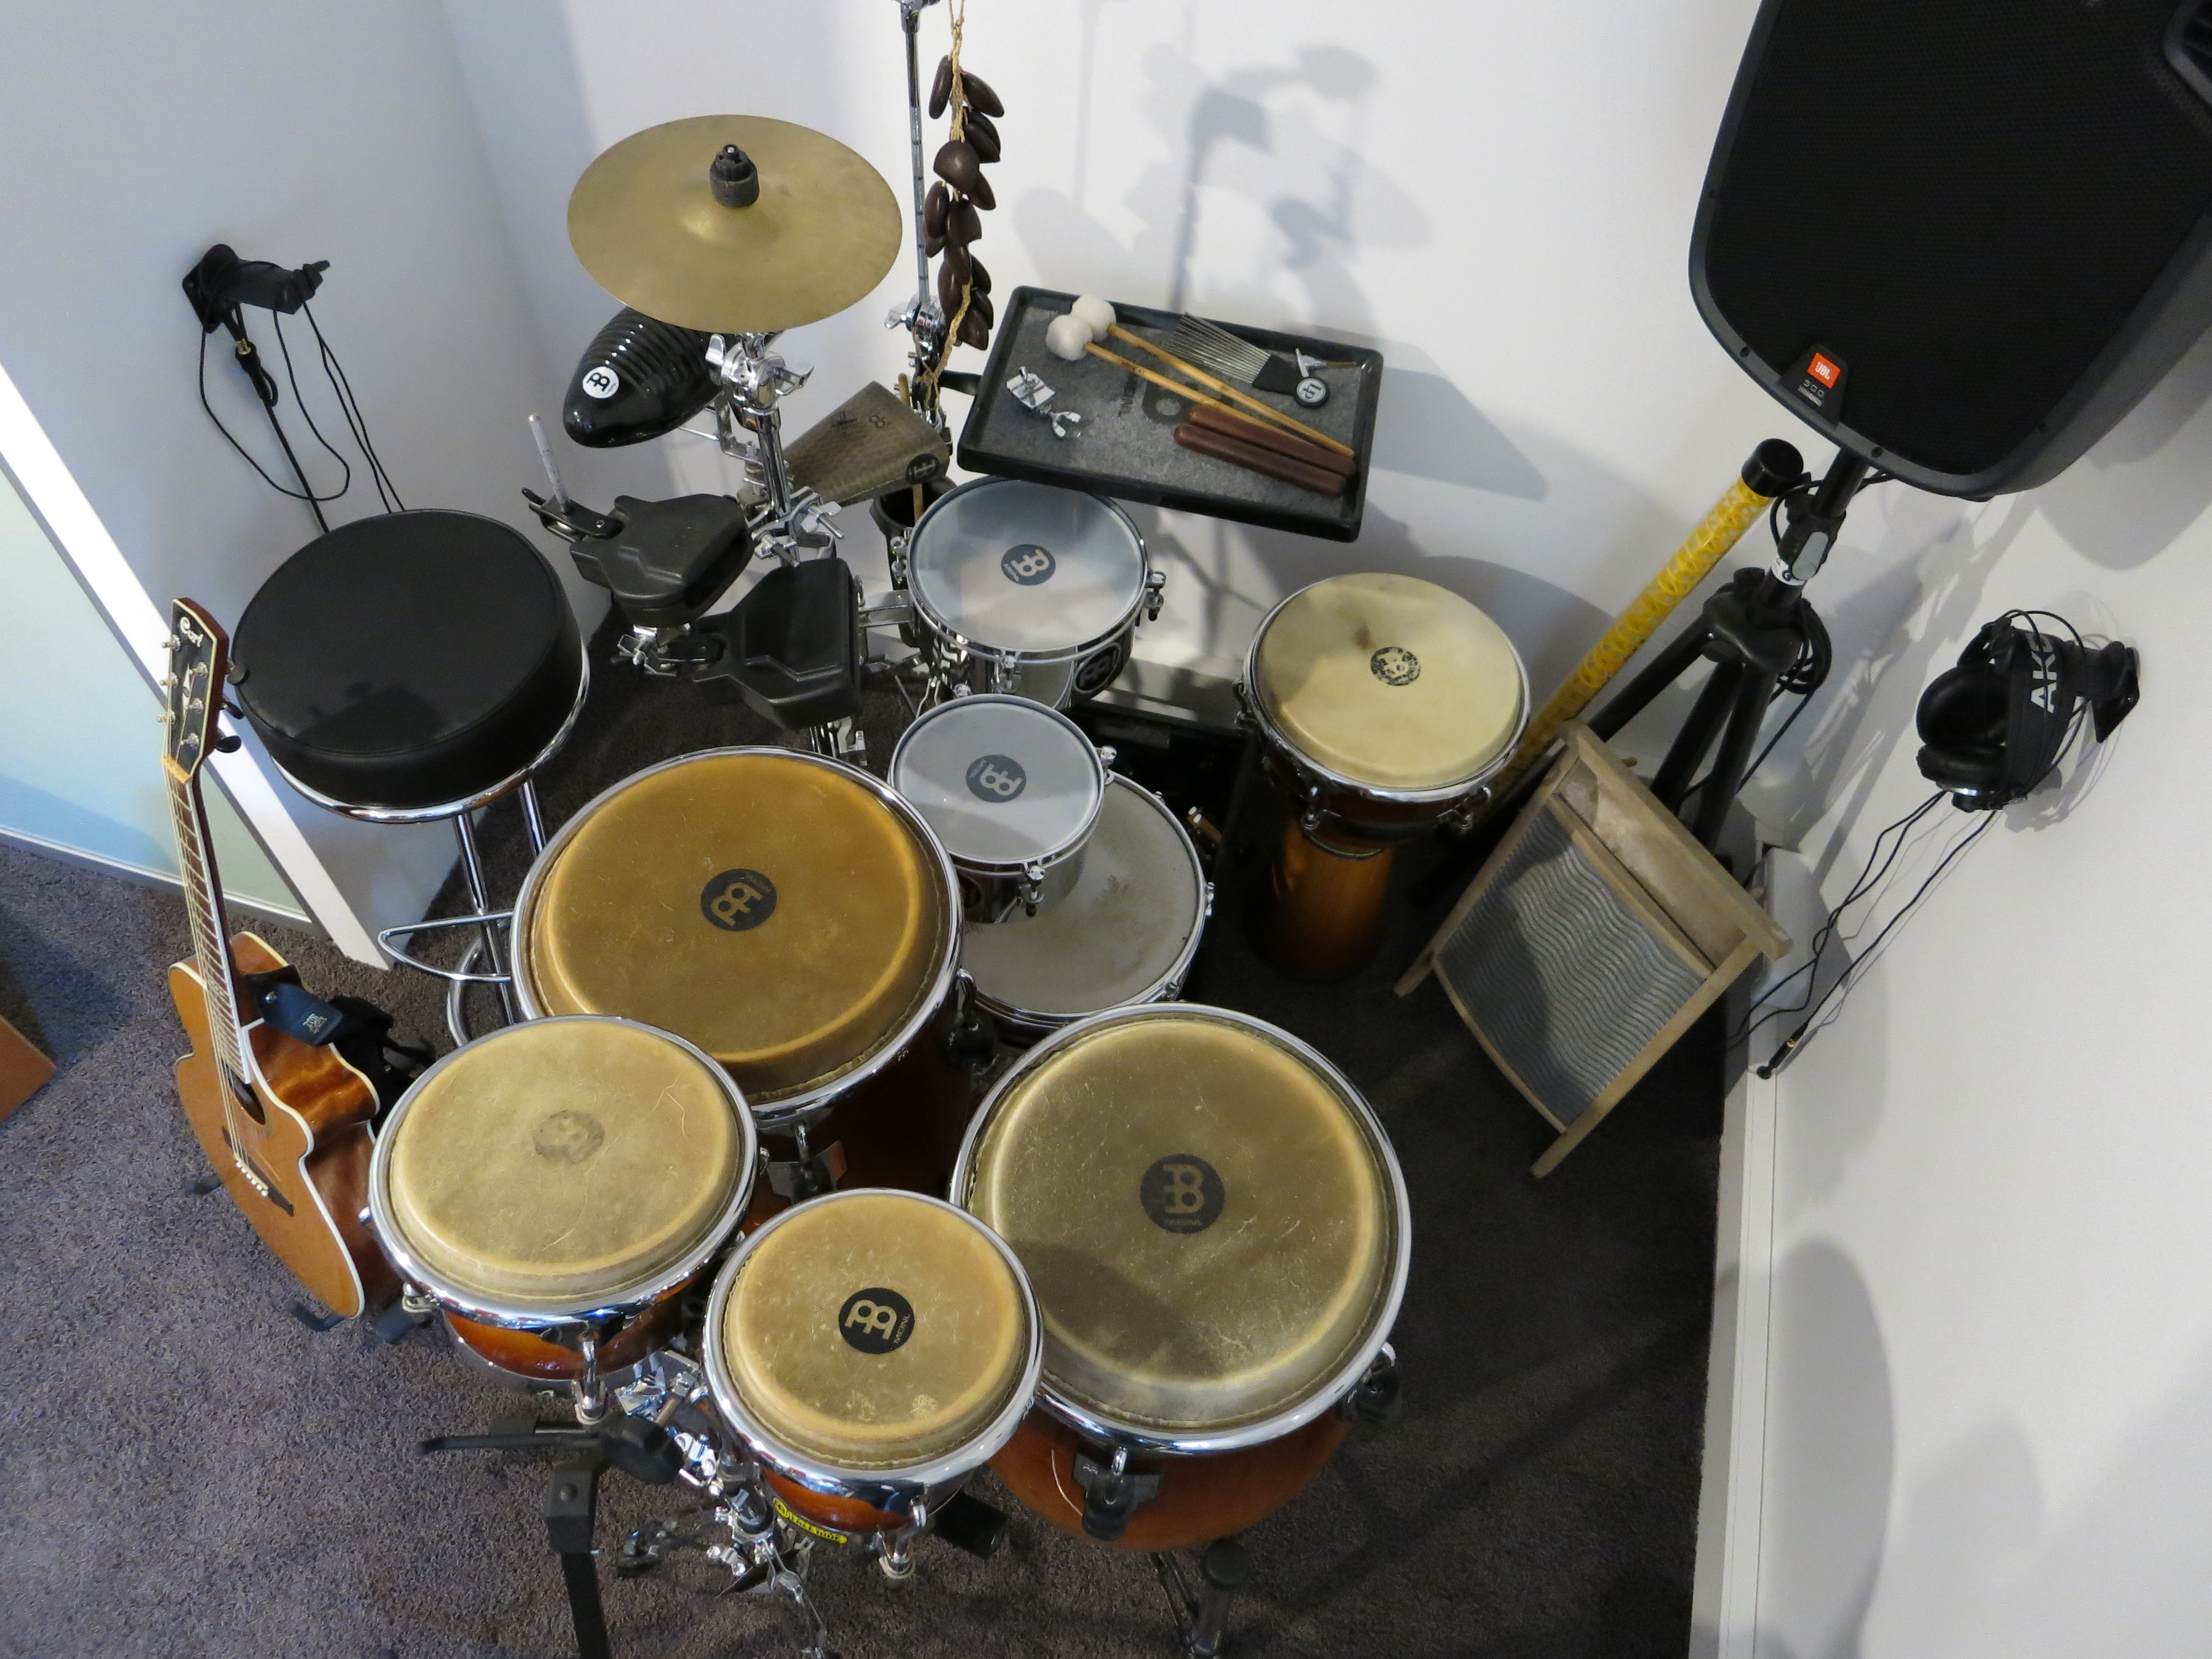 Ein umfangreiches Percussion-Kit ermöglicht auch Lernerfahrungen auf anderen Trommelinstrumente - u.a. Cajon, Djembe, Congas, Bongos - aber auch Gitarre und Keyboard.